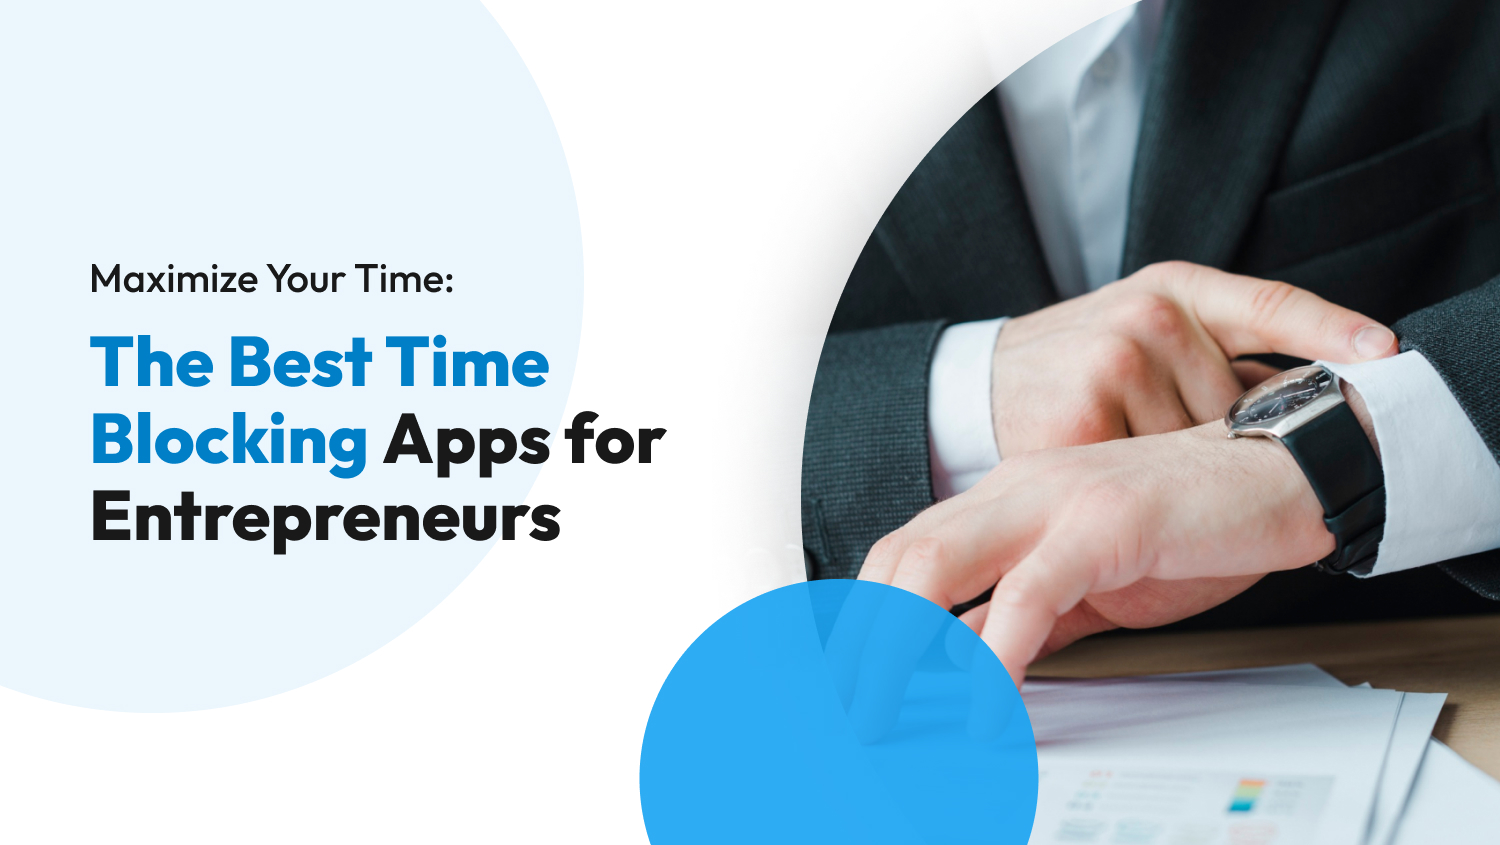 The Best Time Blocking Apps for Entrepreneurs